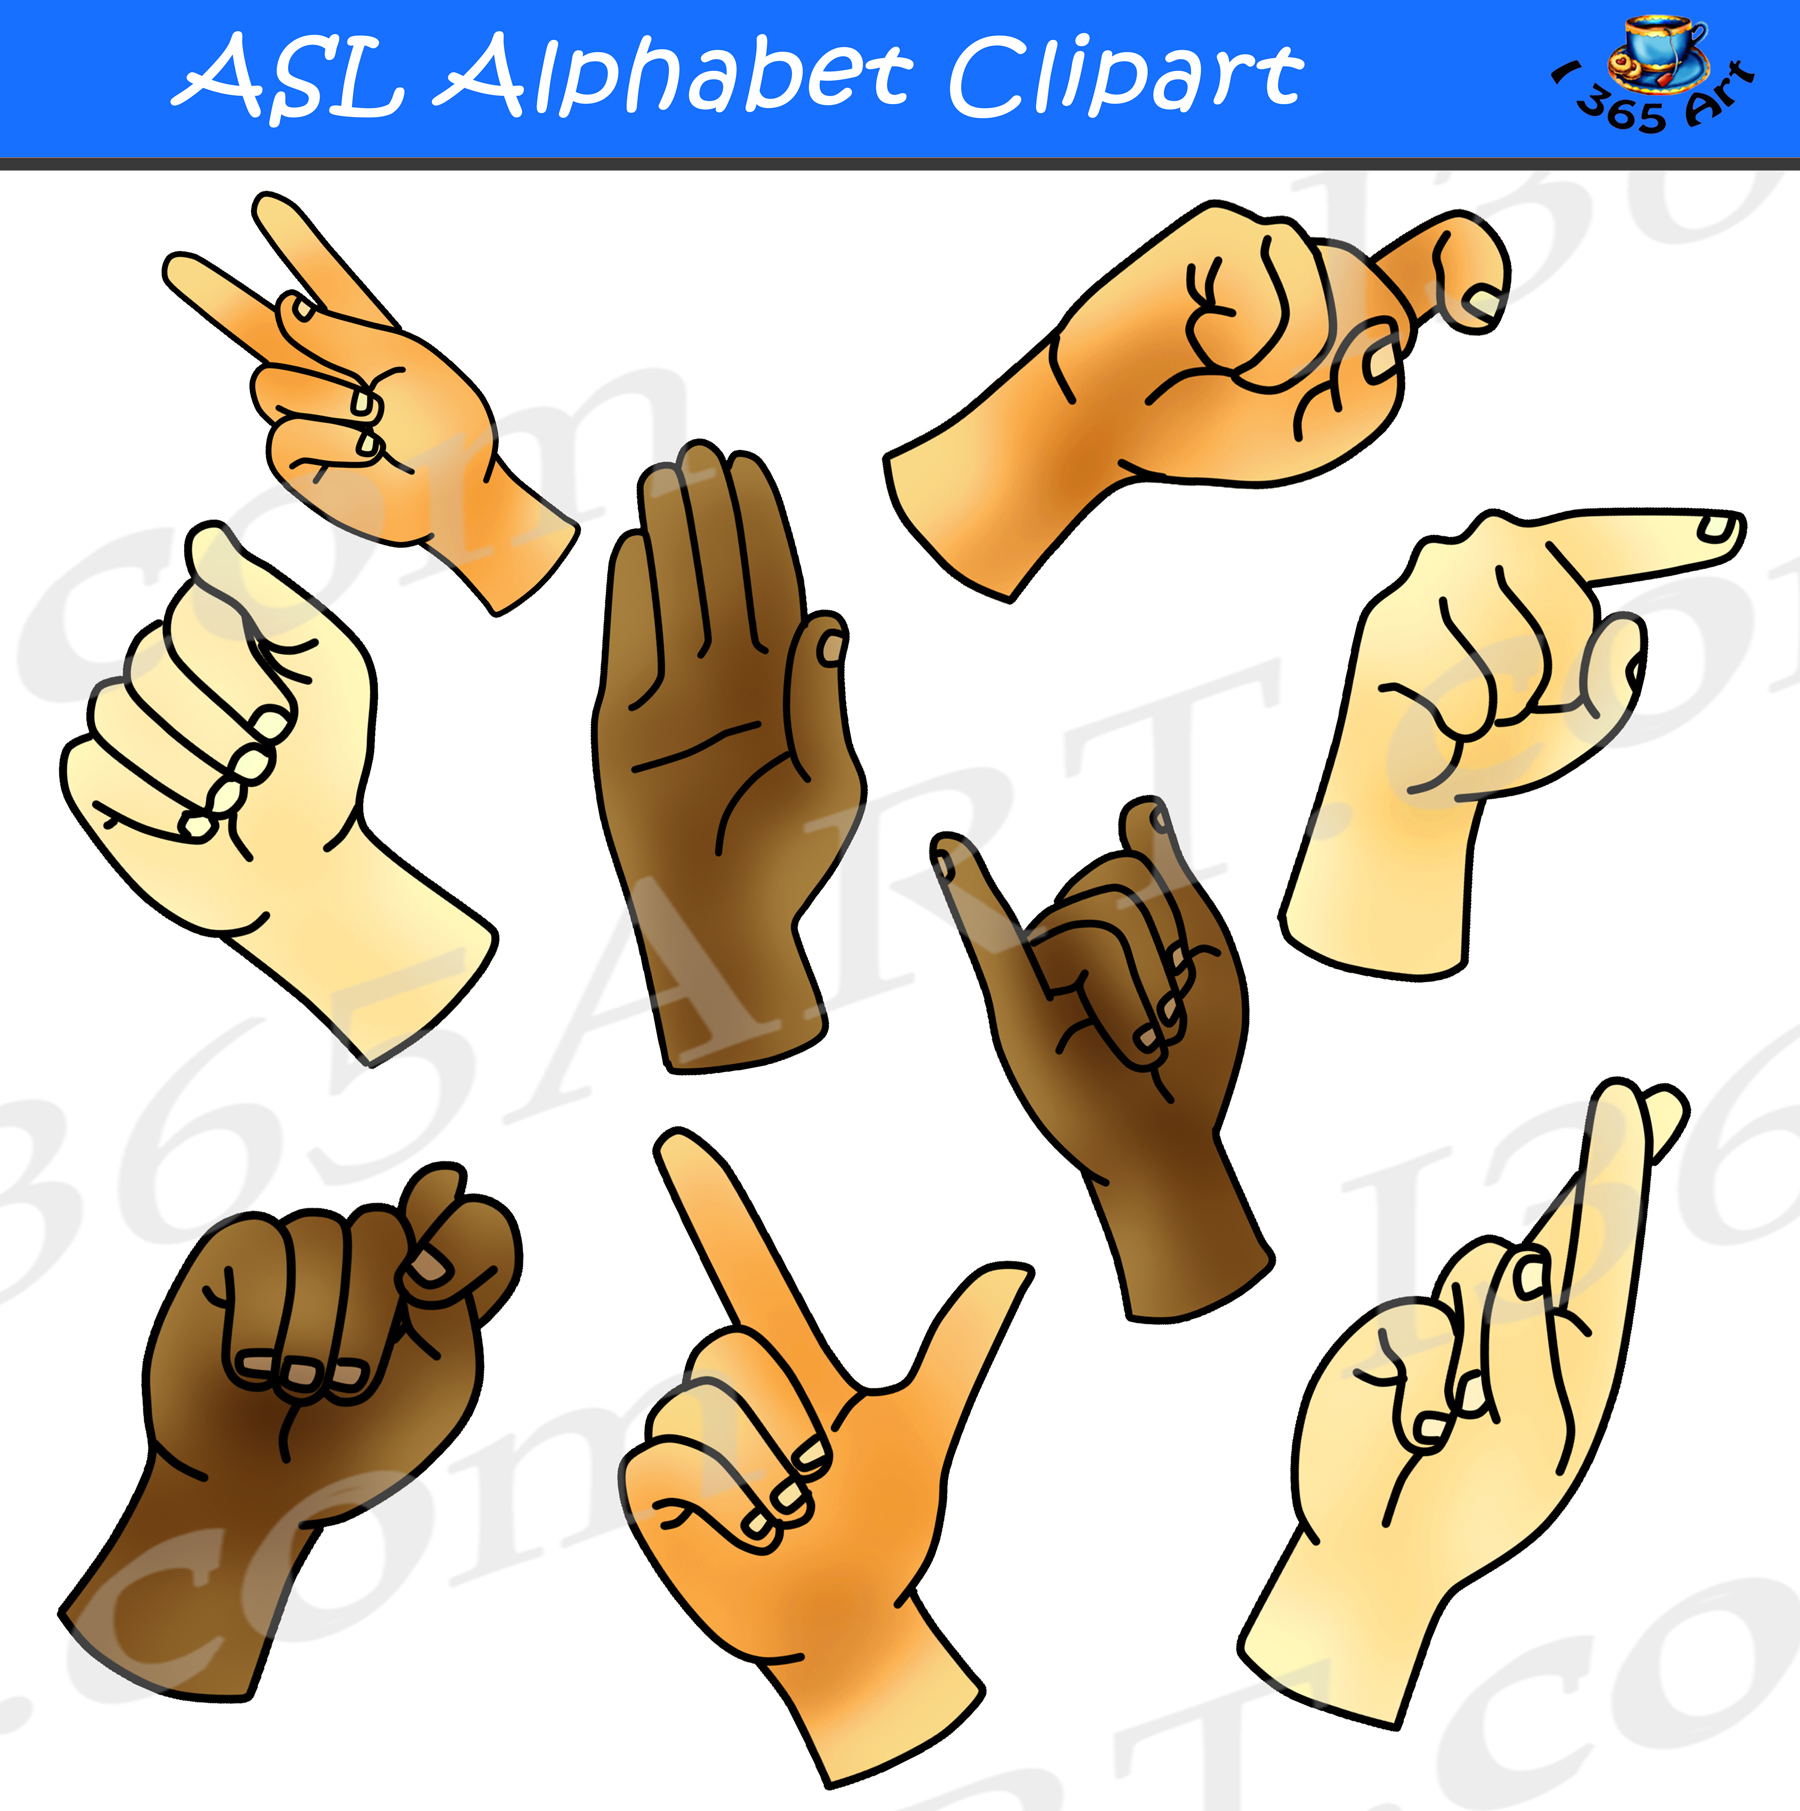 ASL Alphabet Clipart Bundle Pack